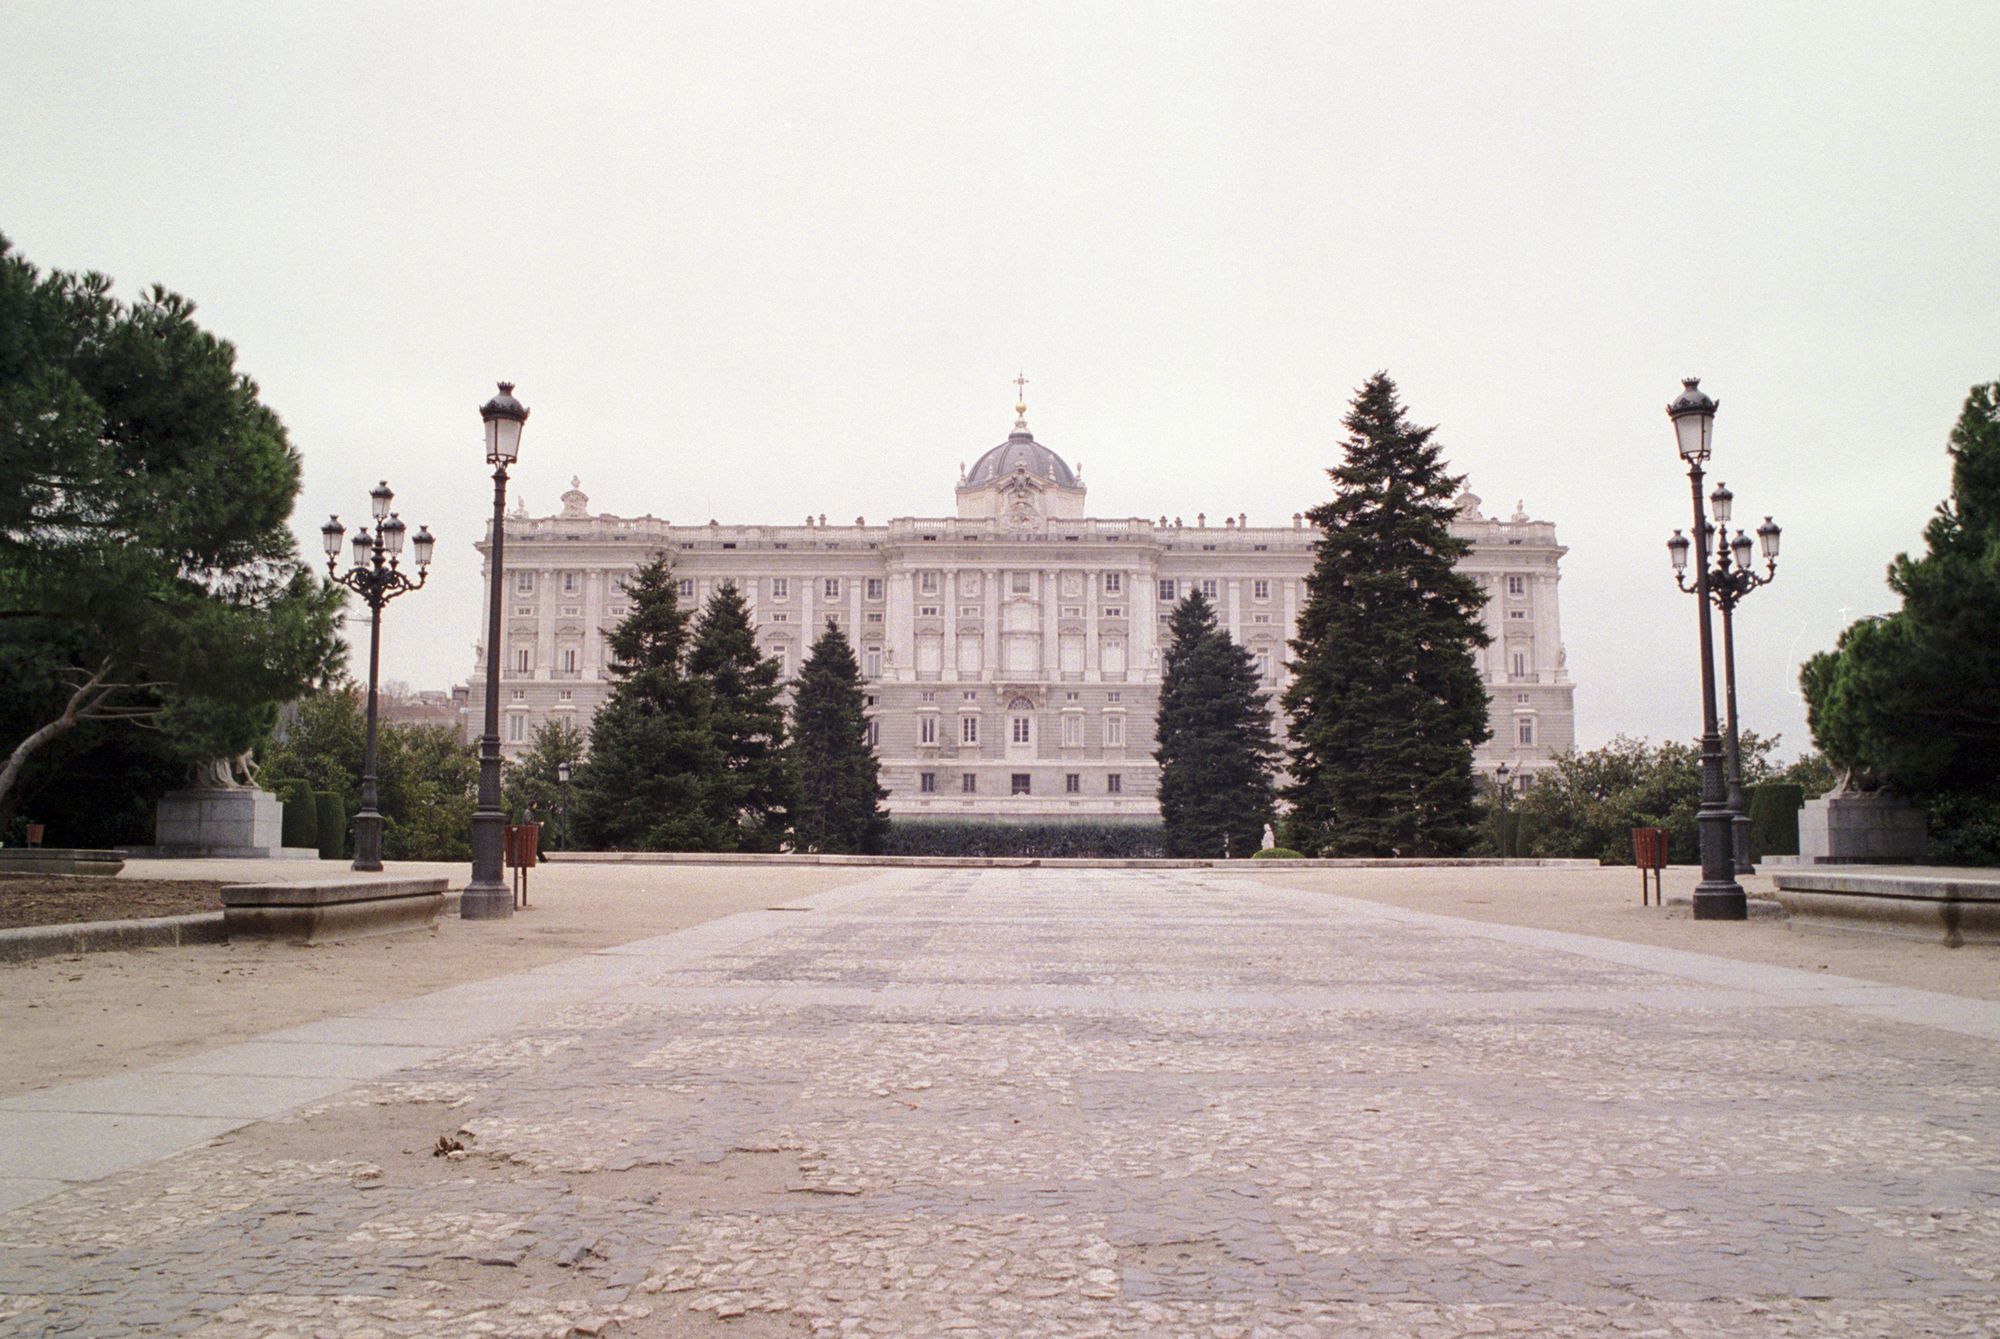 Palacio Real - wide angle